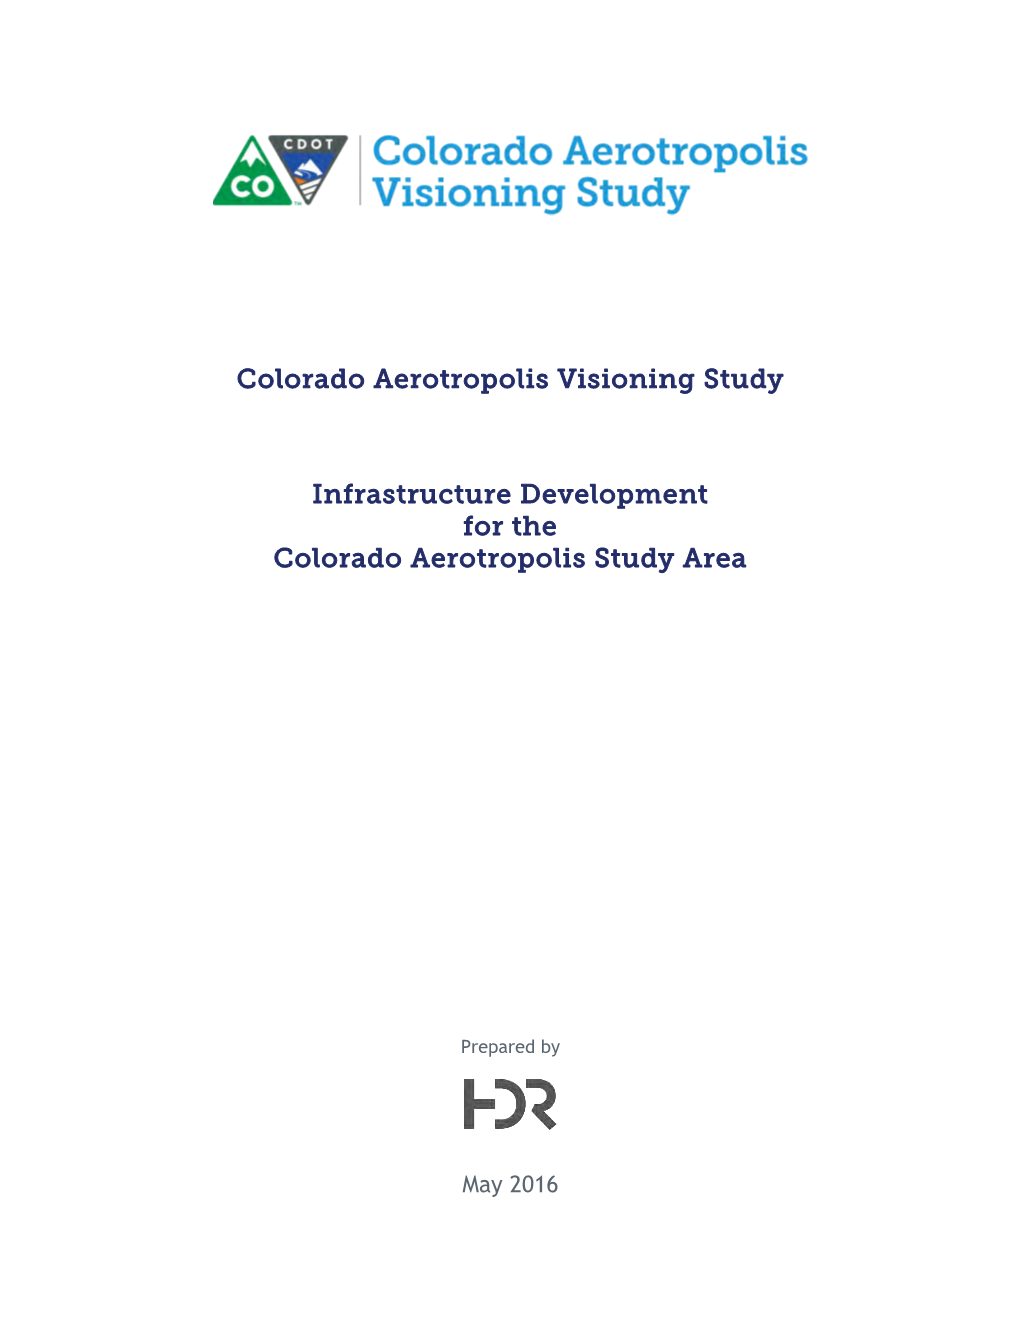 Colorado Aerotropolis Visioning Study Infrastructure Development for the Colorado Aerotropolis Study Area